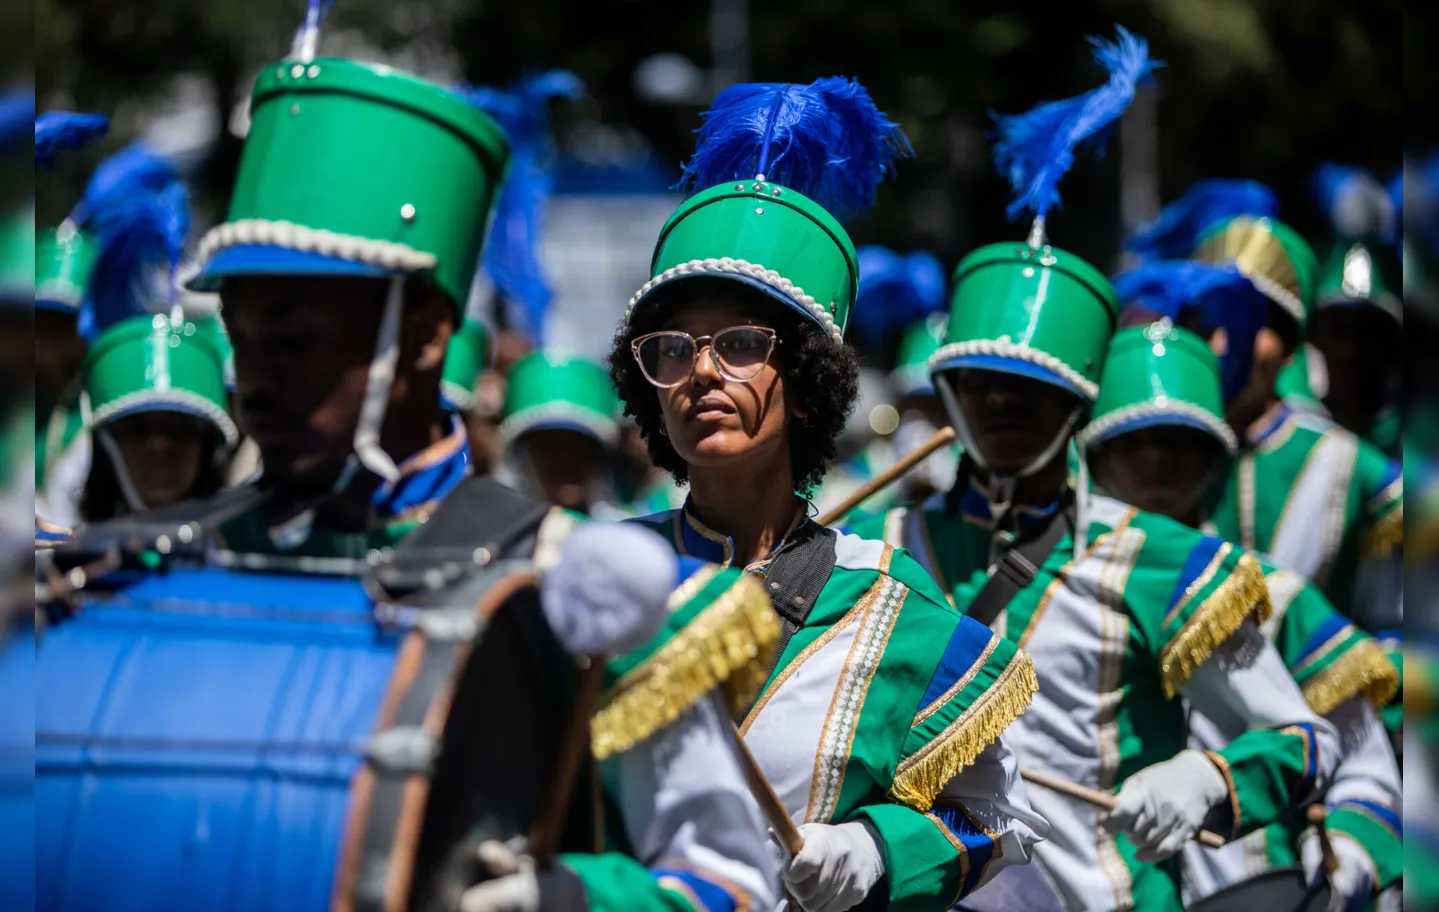 Devido à mudança de governo, há expectativa de maior participação popular no desfile do 7 de setembro